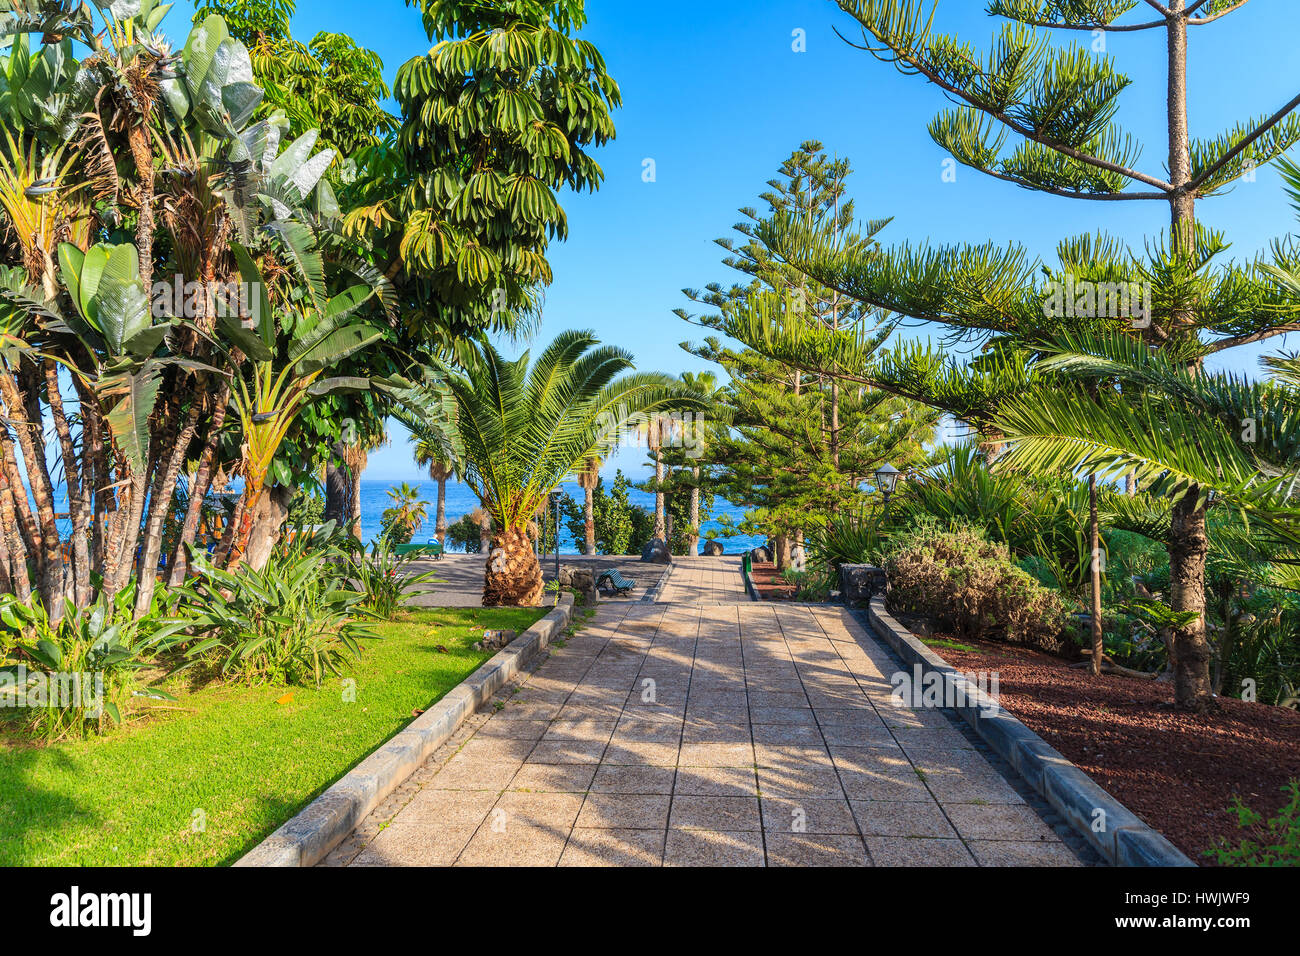 Giardino tropicale in Puerto de la Cruz città sull'isola di Tenerife, Spagna Foto Stock